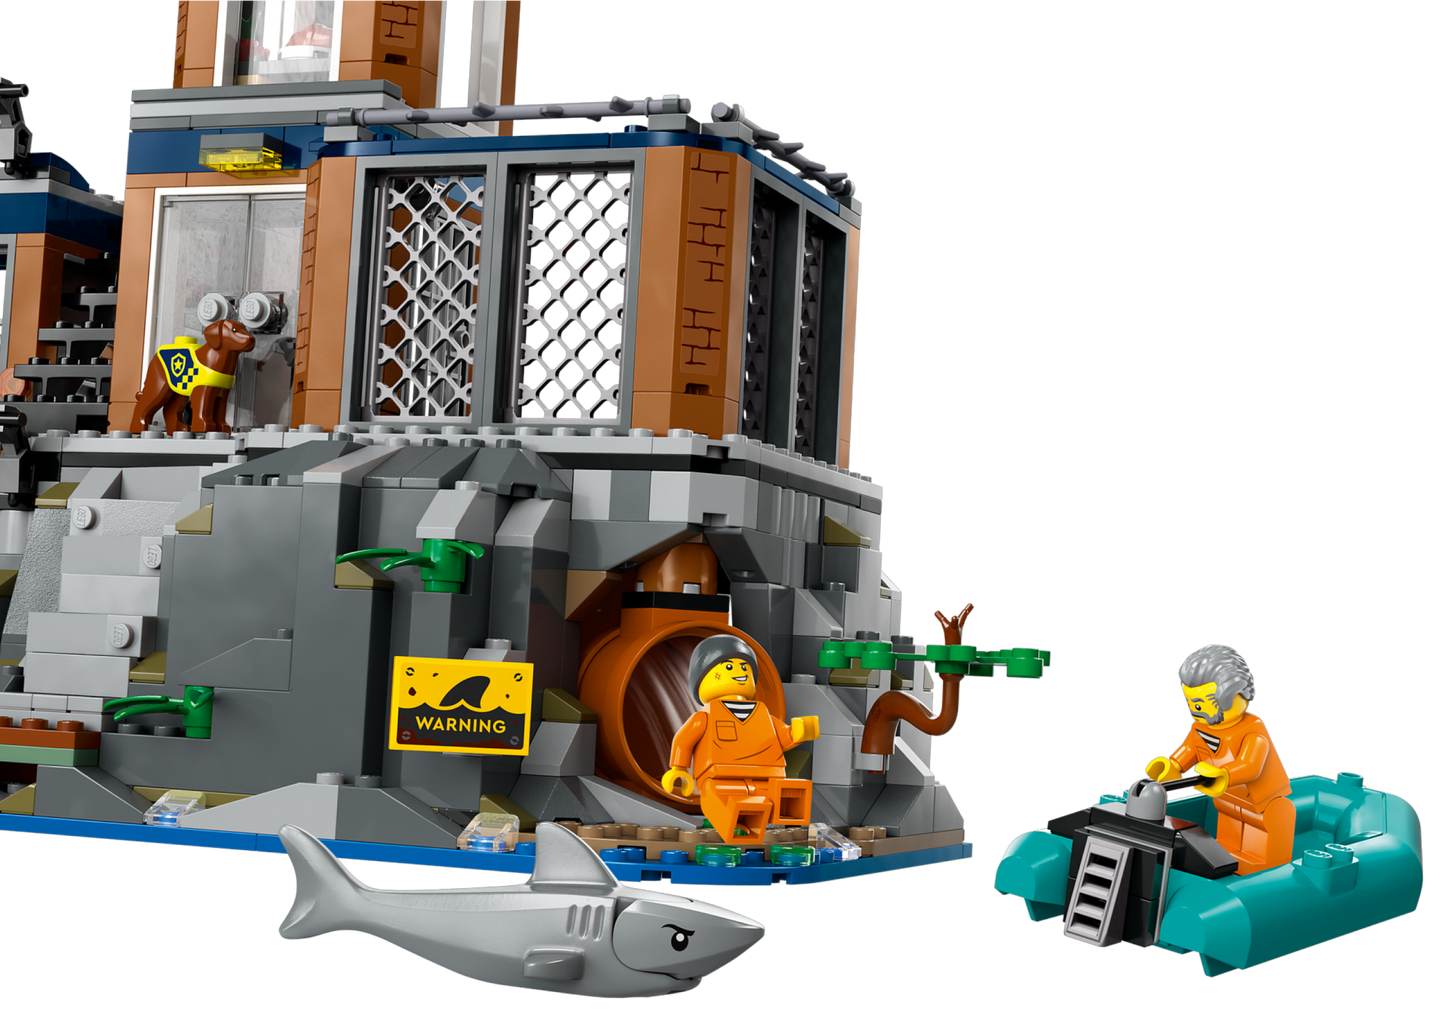 LEGO® set 60419